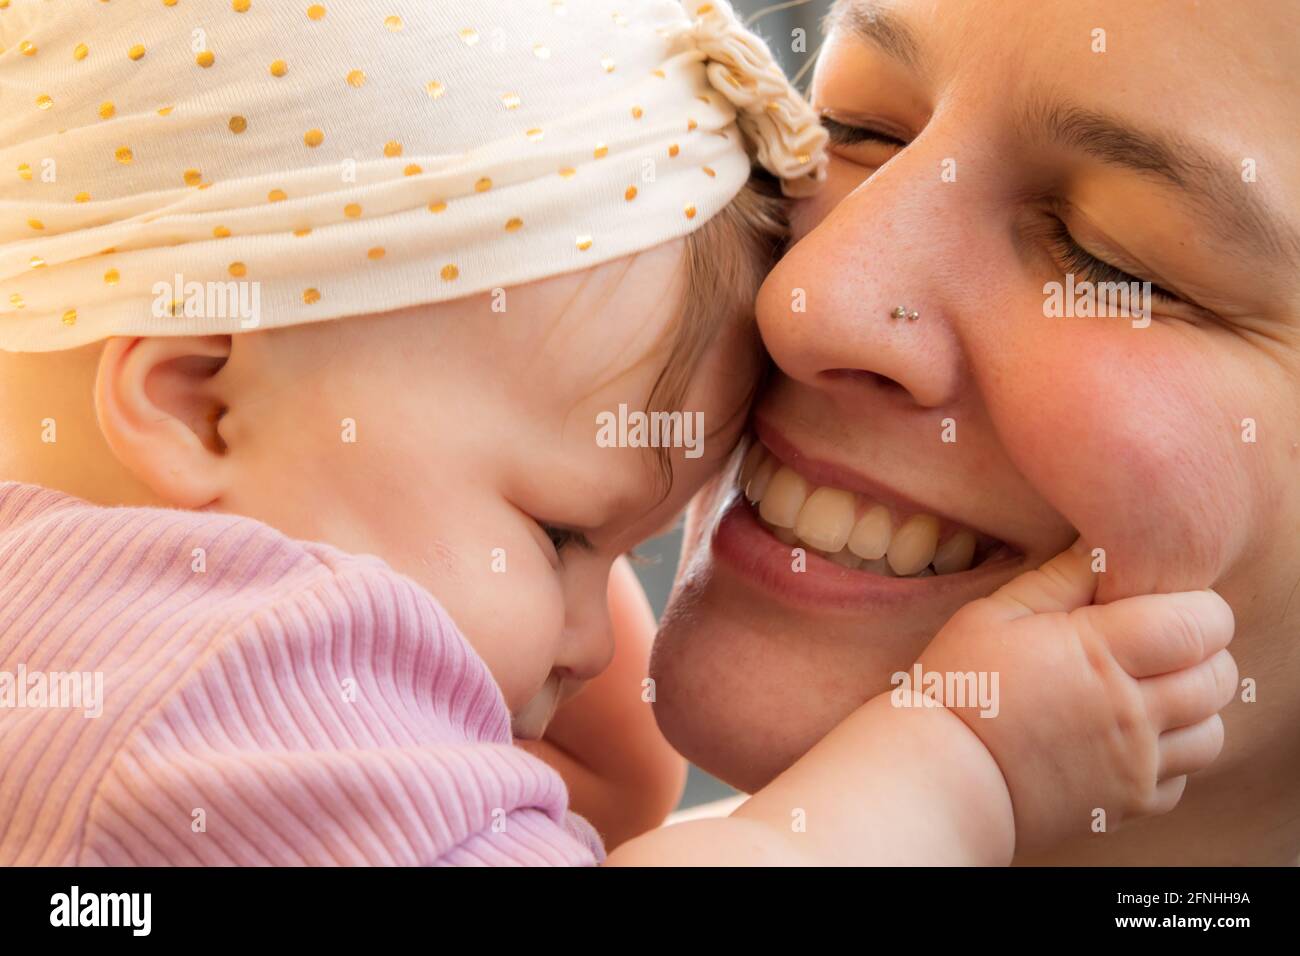 Gros plan de la jeune mère avec un bébé de 5 mois, embrassant, souriant, expression affectueuse. Bébé avec chapeau, tenant la joue de mère. Banque D'Images